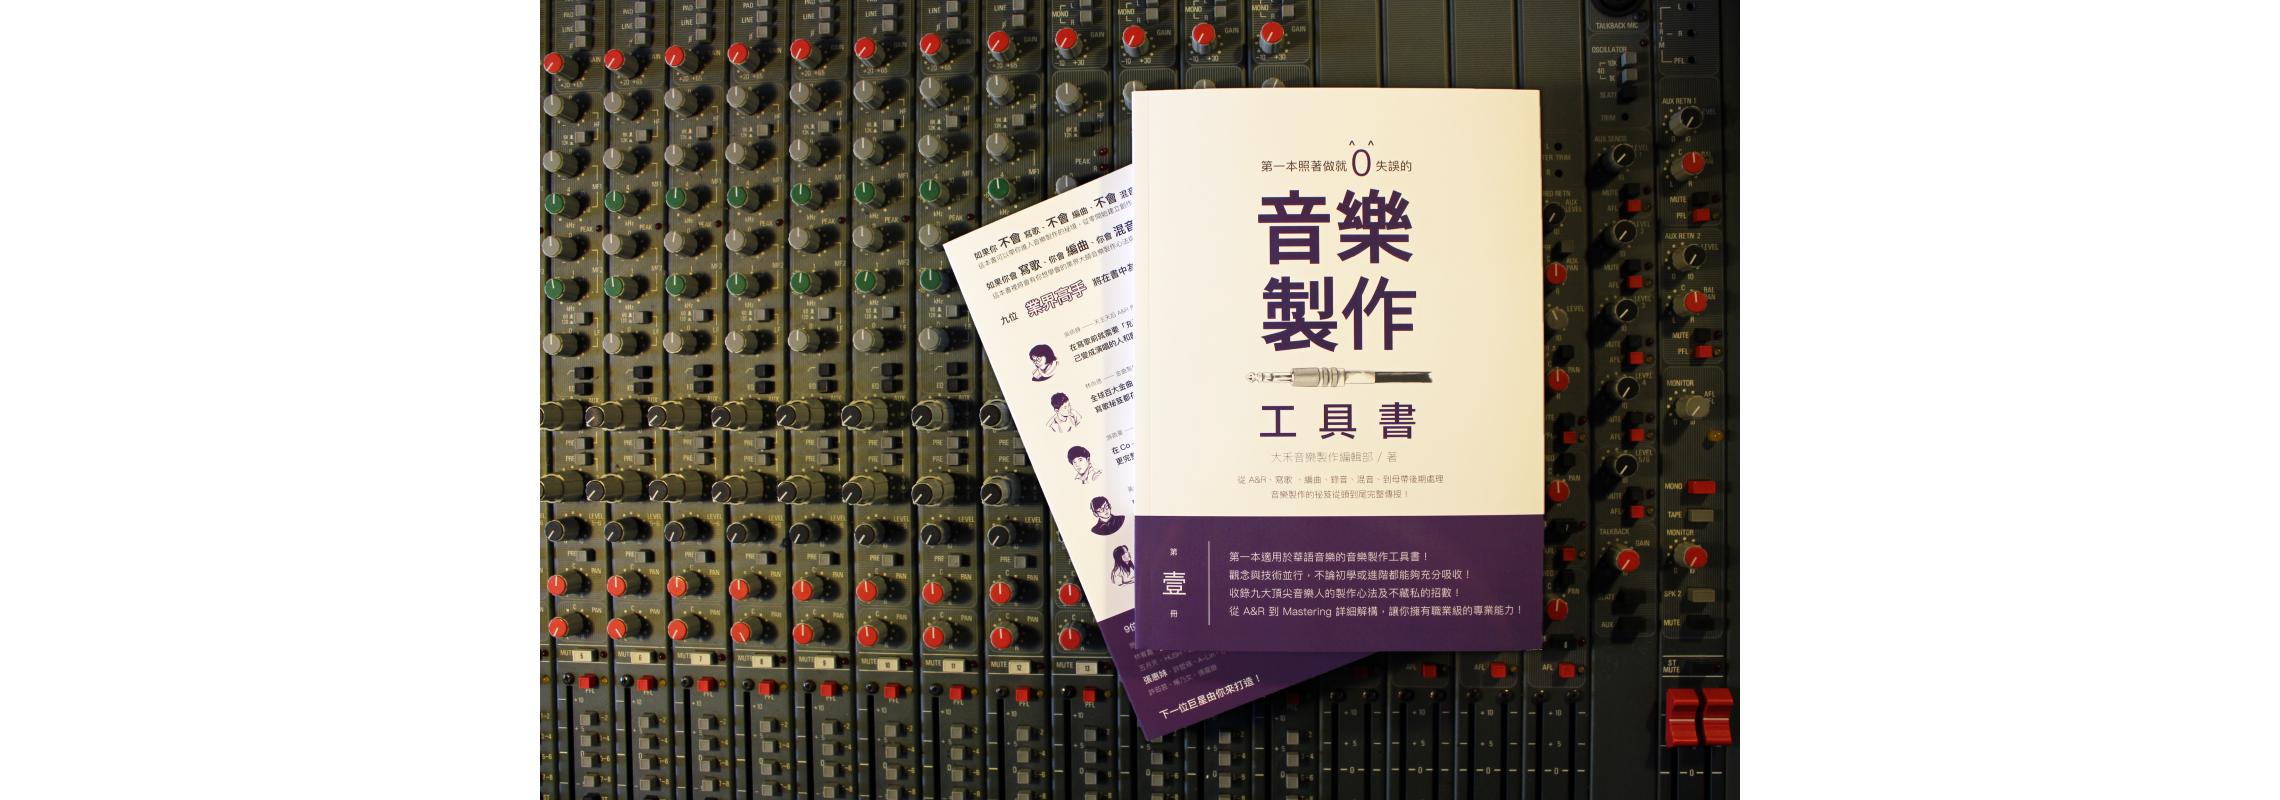 音樂人必讀好書-中文音樂製作參考書籍介紹